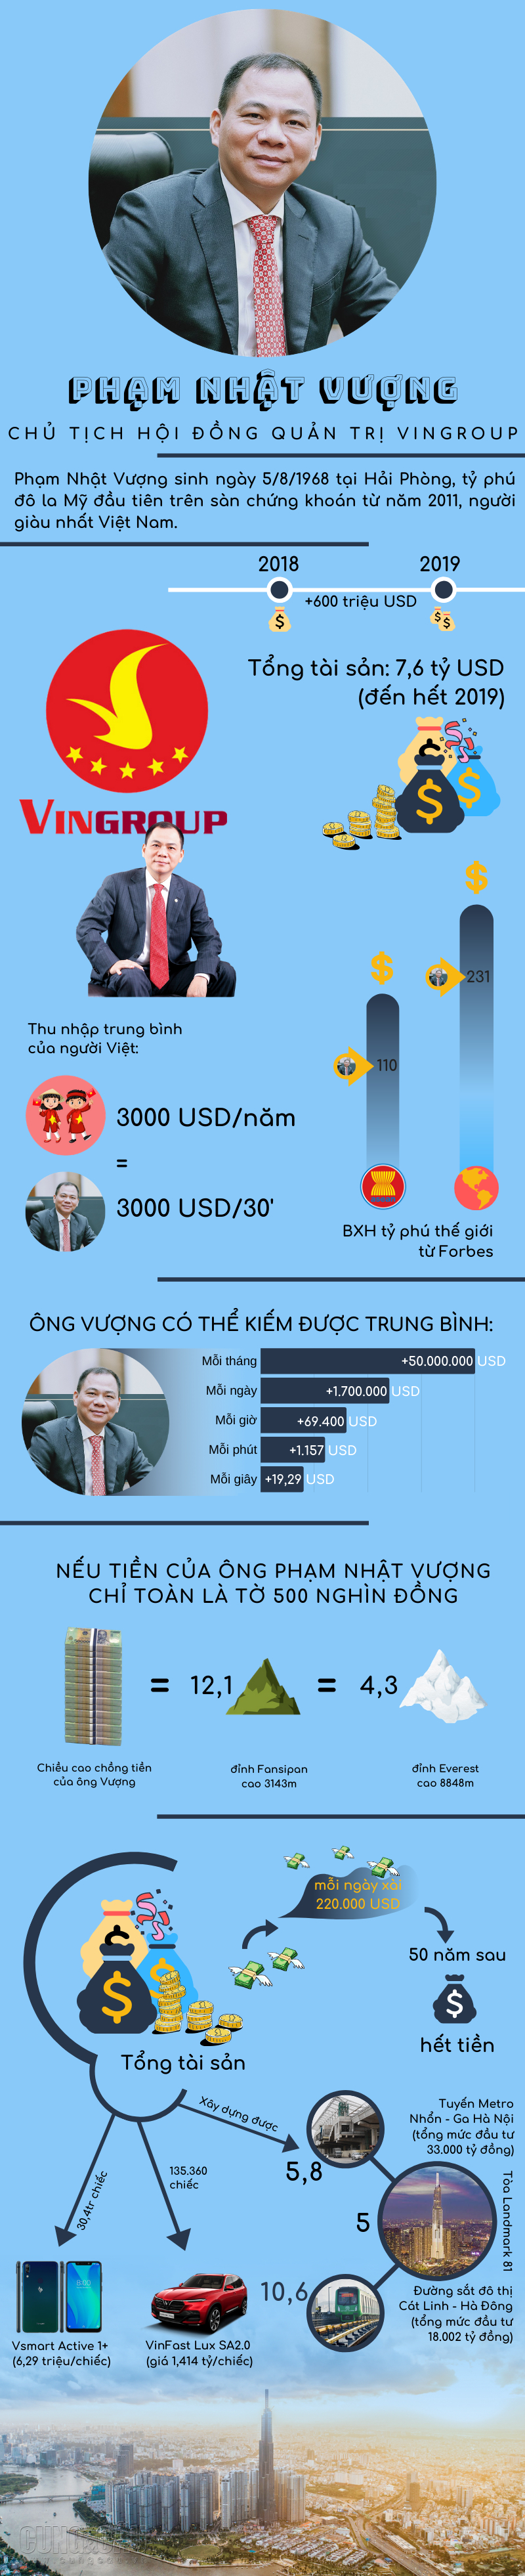 Ông Phạm Nhật Vượng kiếm được bao nhiêu tiền ở những ngày đầu năm 2020?